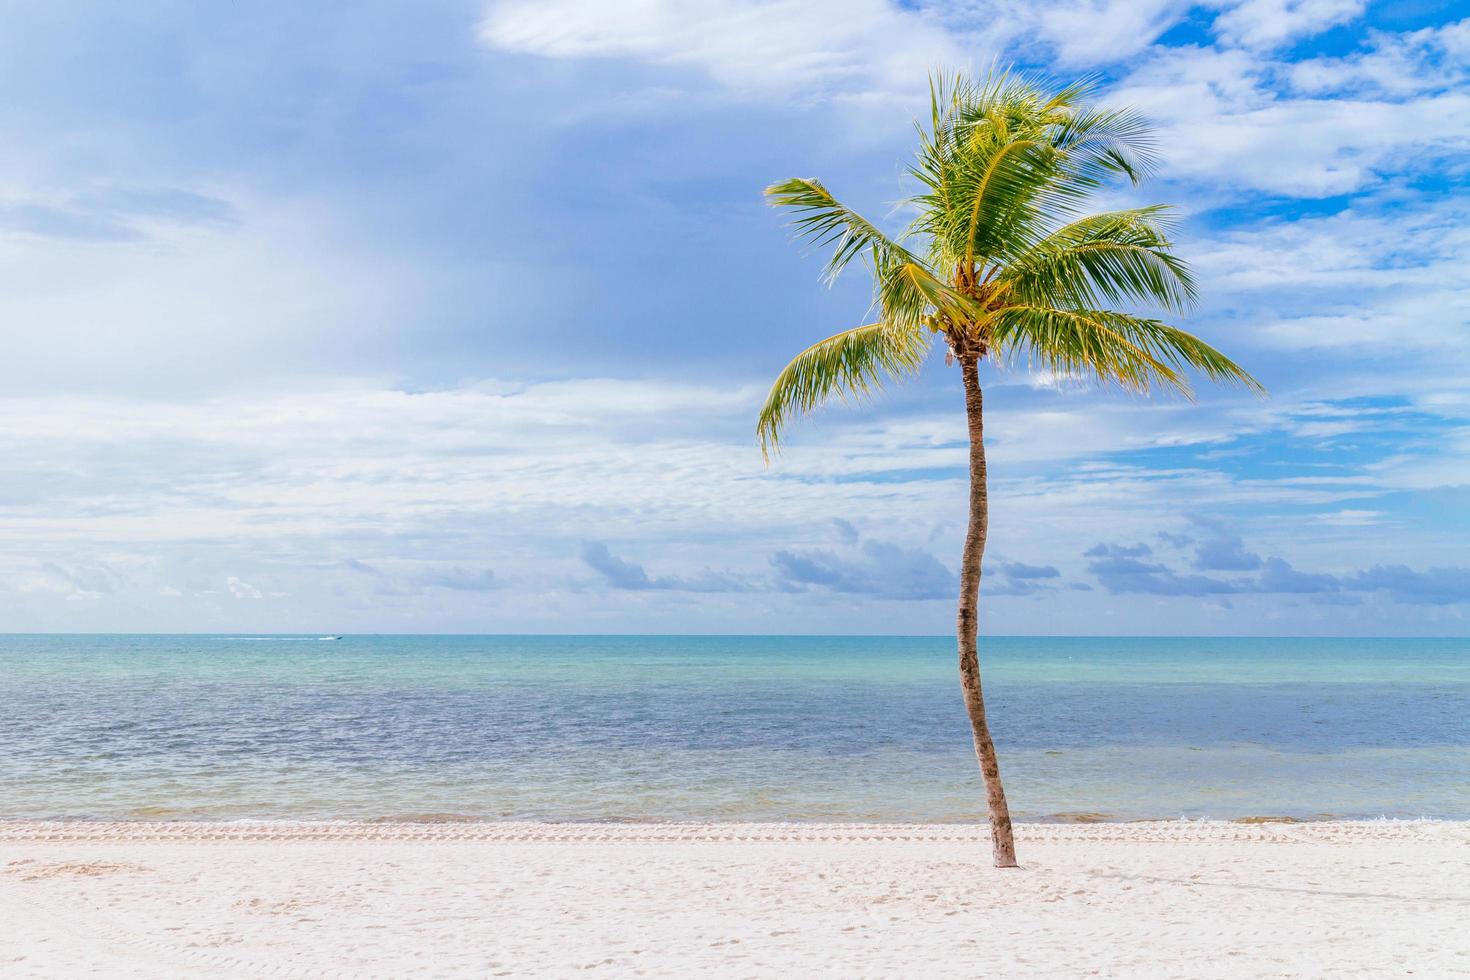 cocotier sur une plage de sable blanc. photo